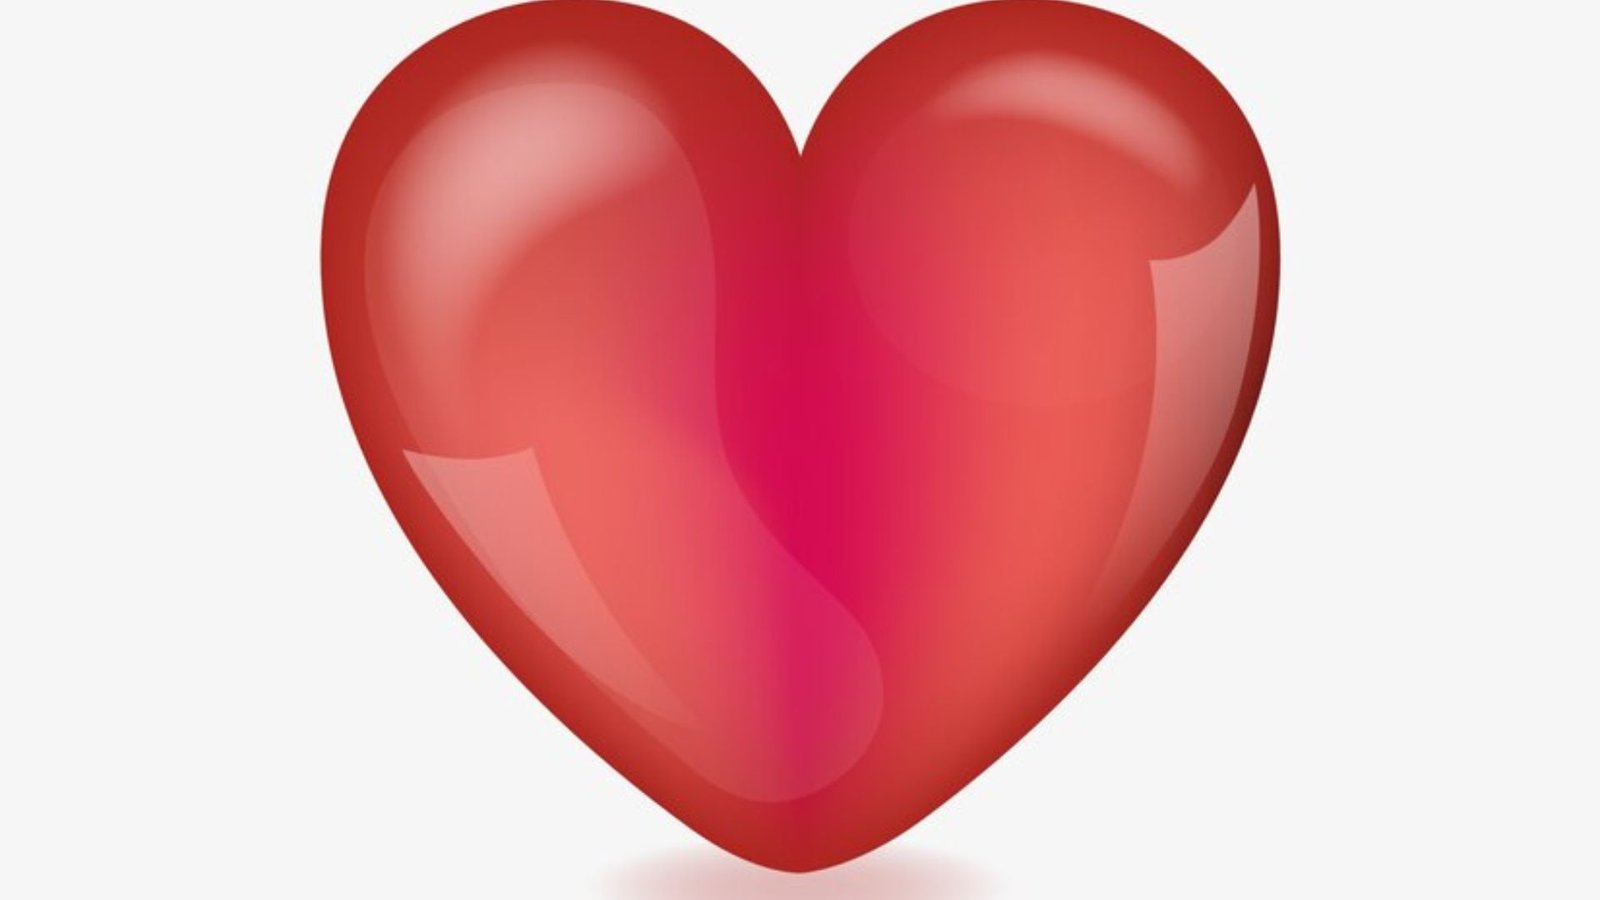 A heart sign showing heart clip art